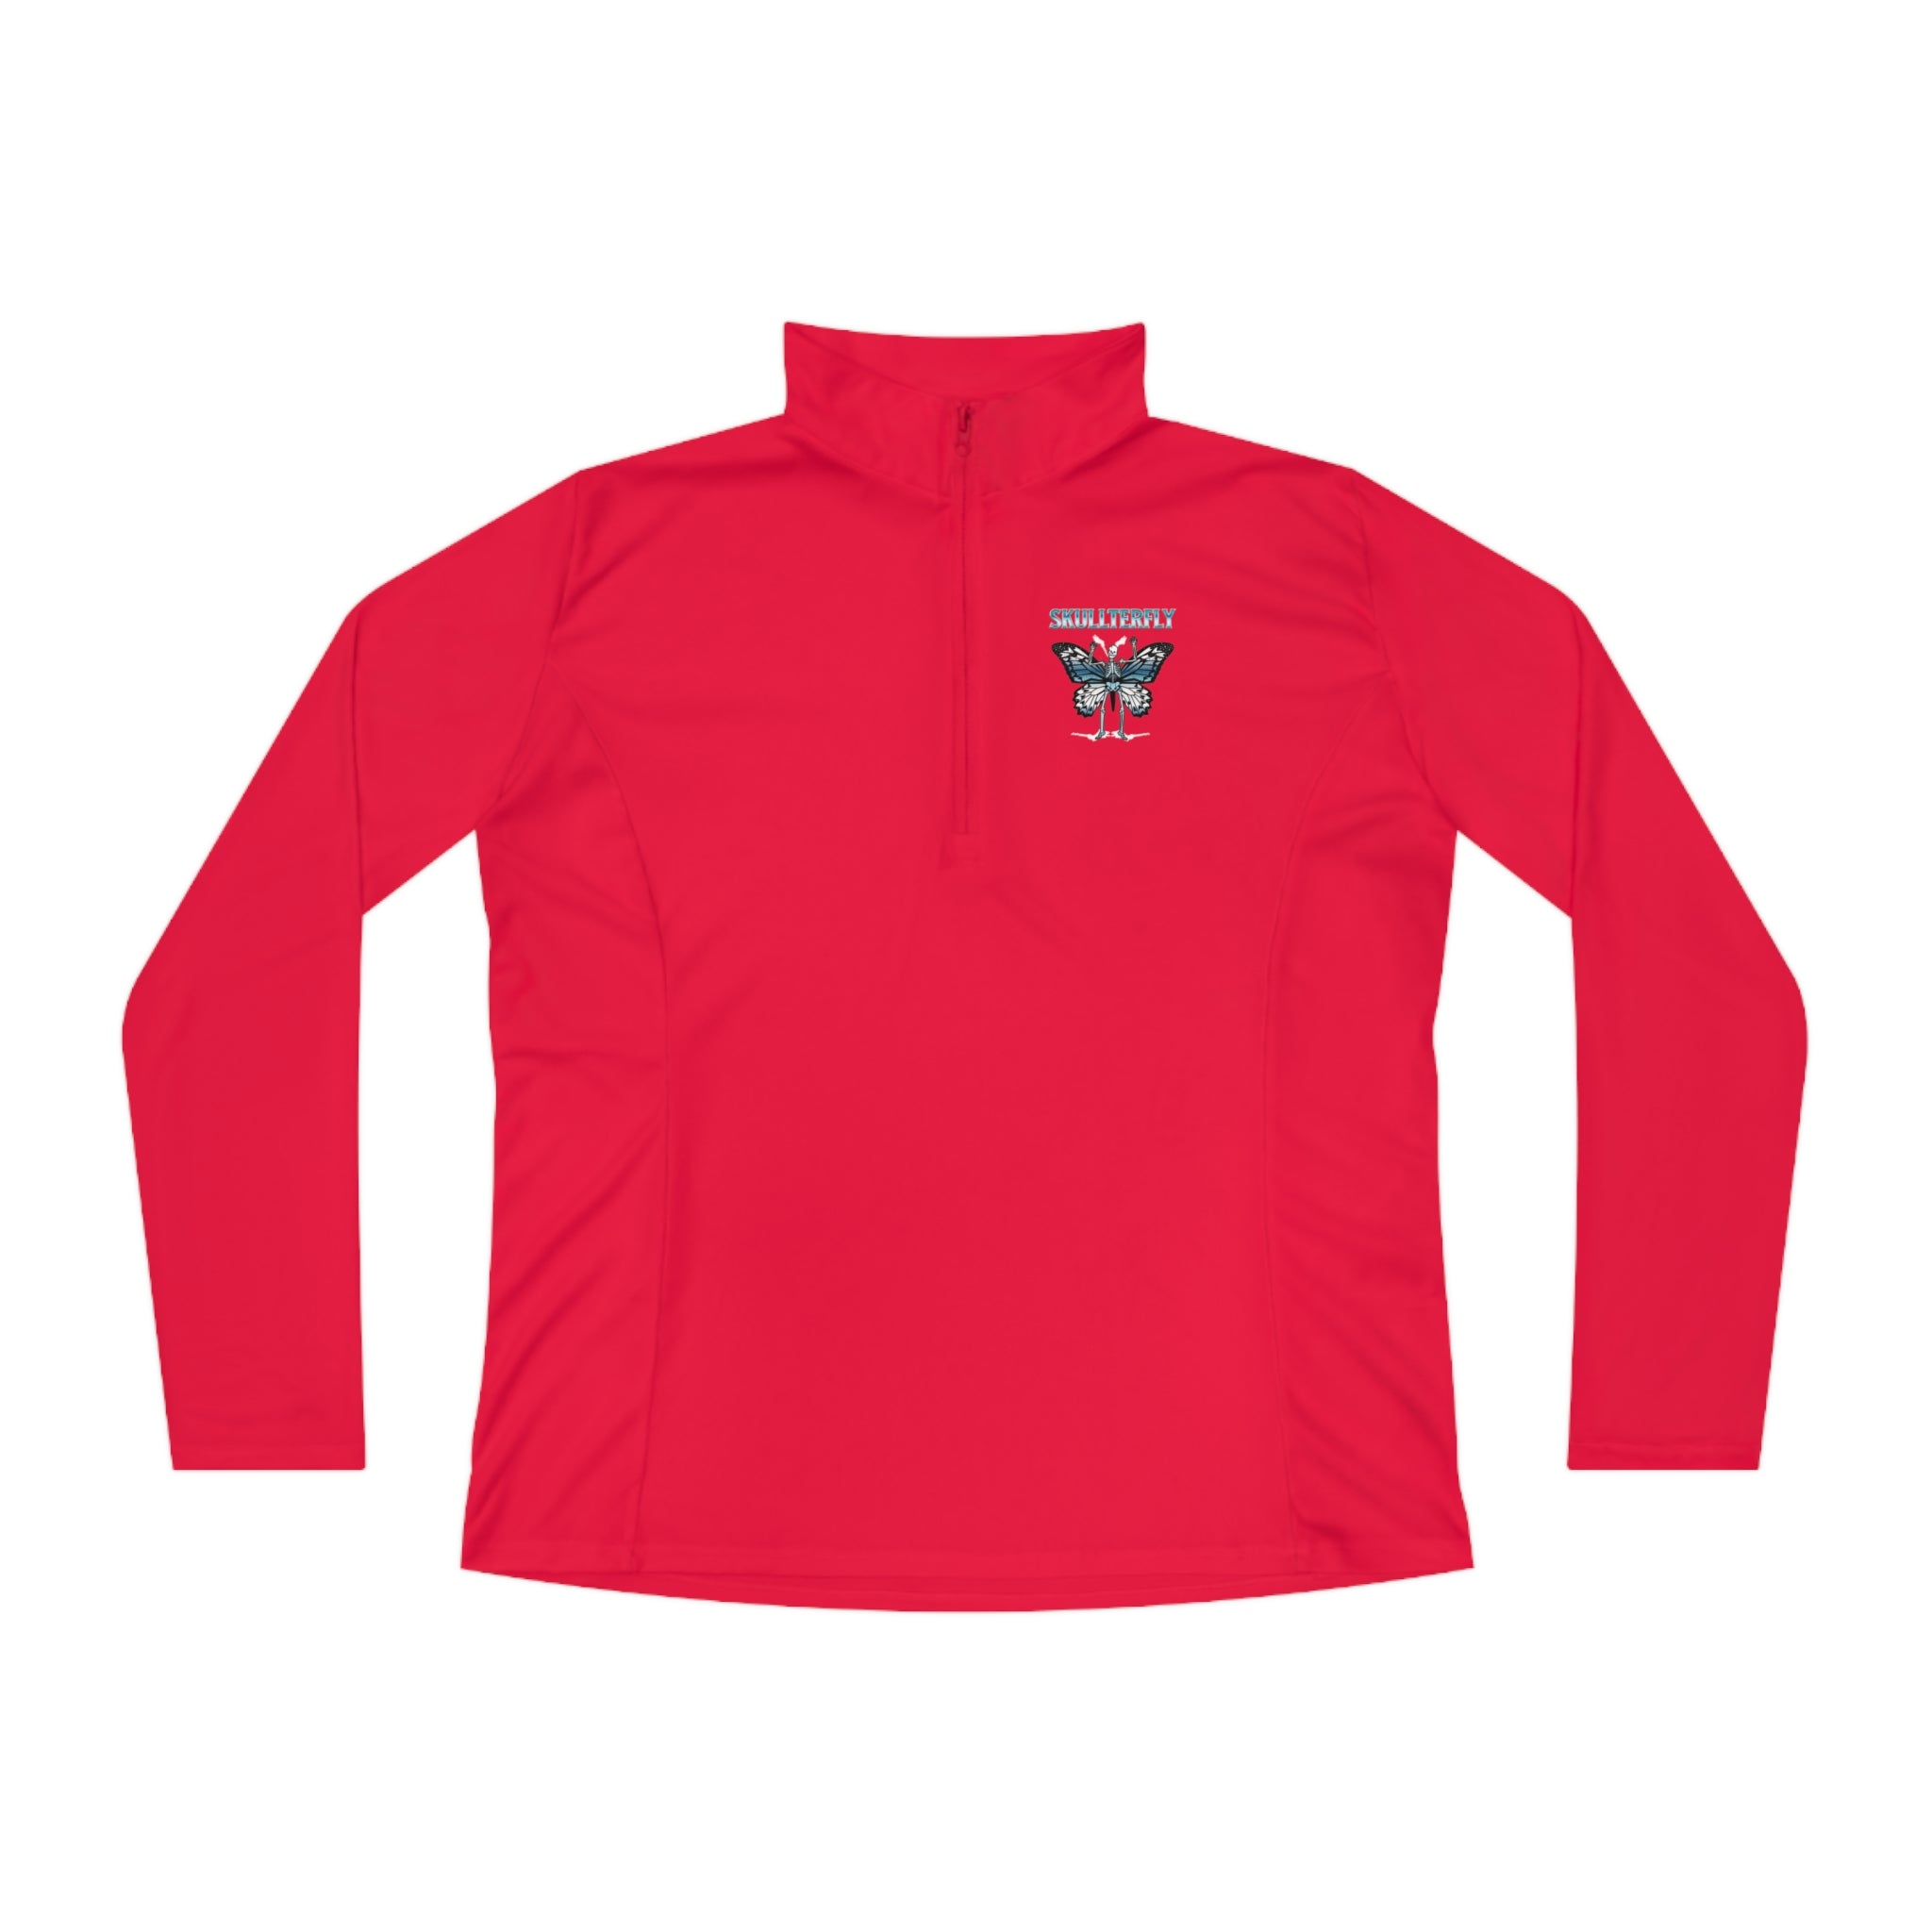 SORTYGO - Skullterfly Women Quarter Zip Pullover in True Red